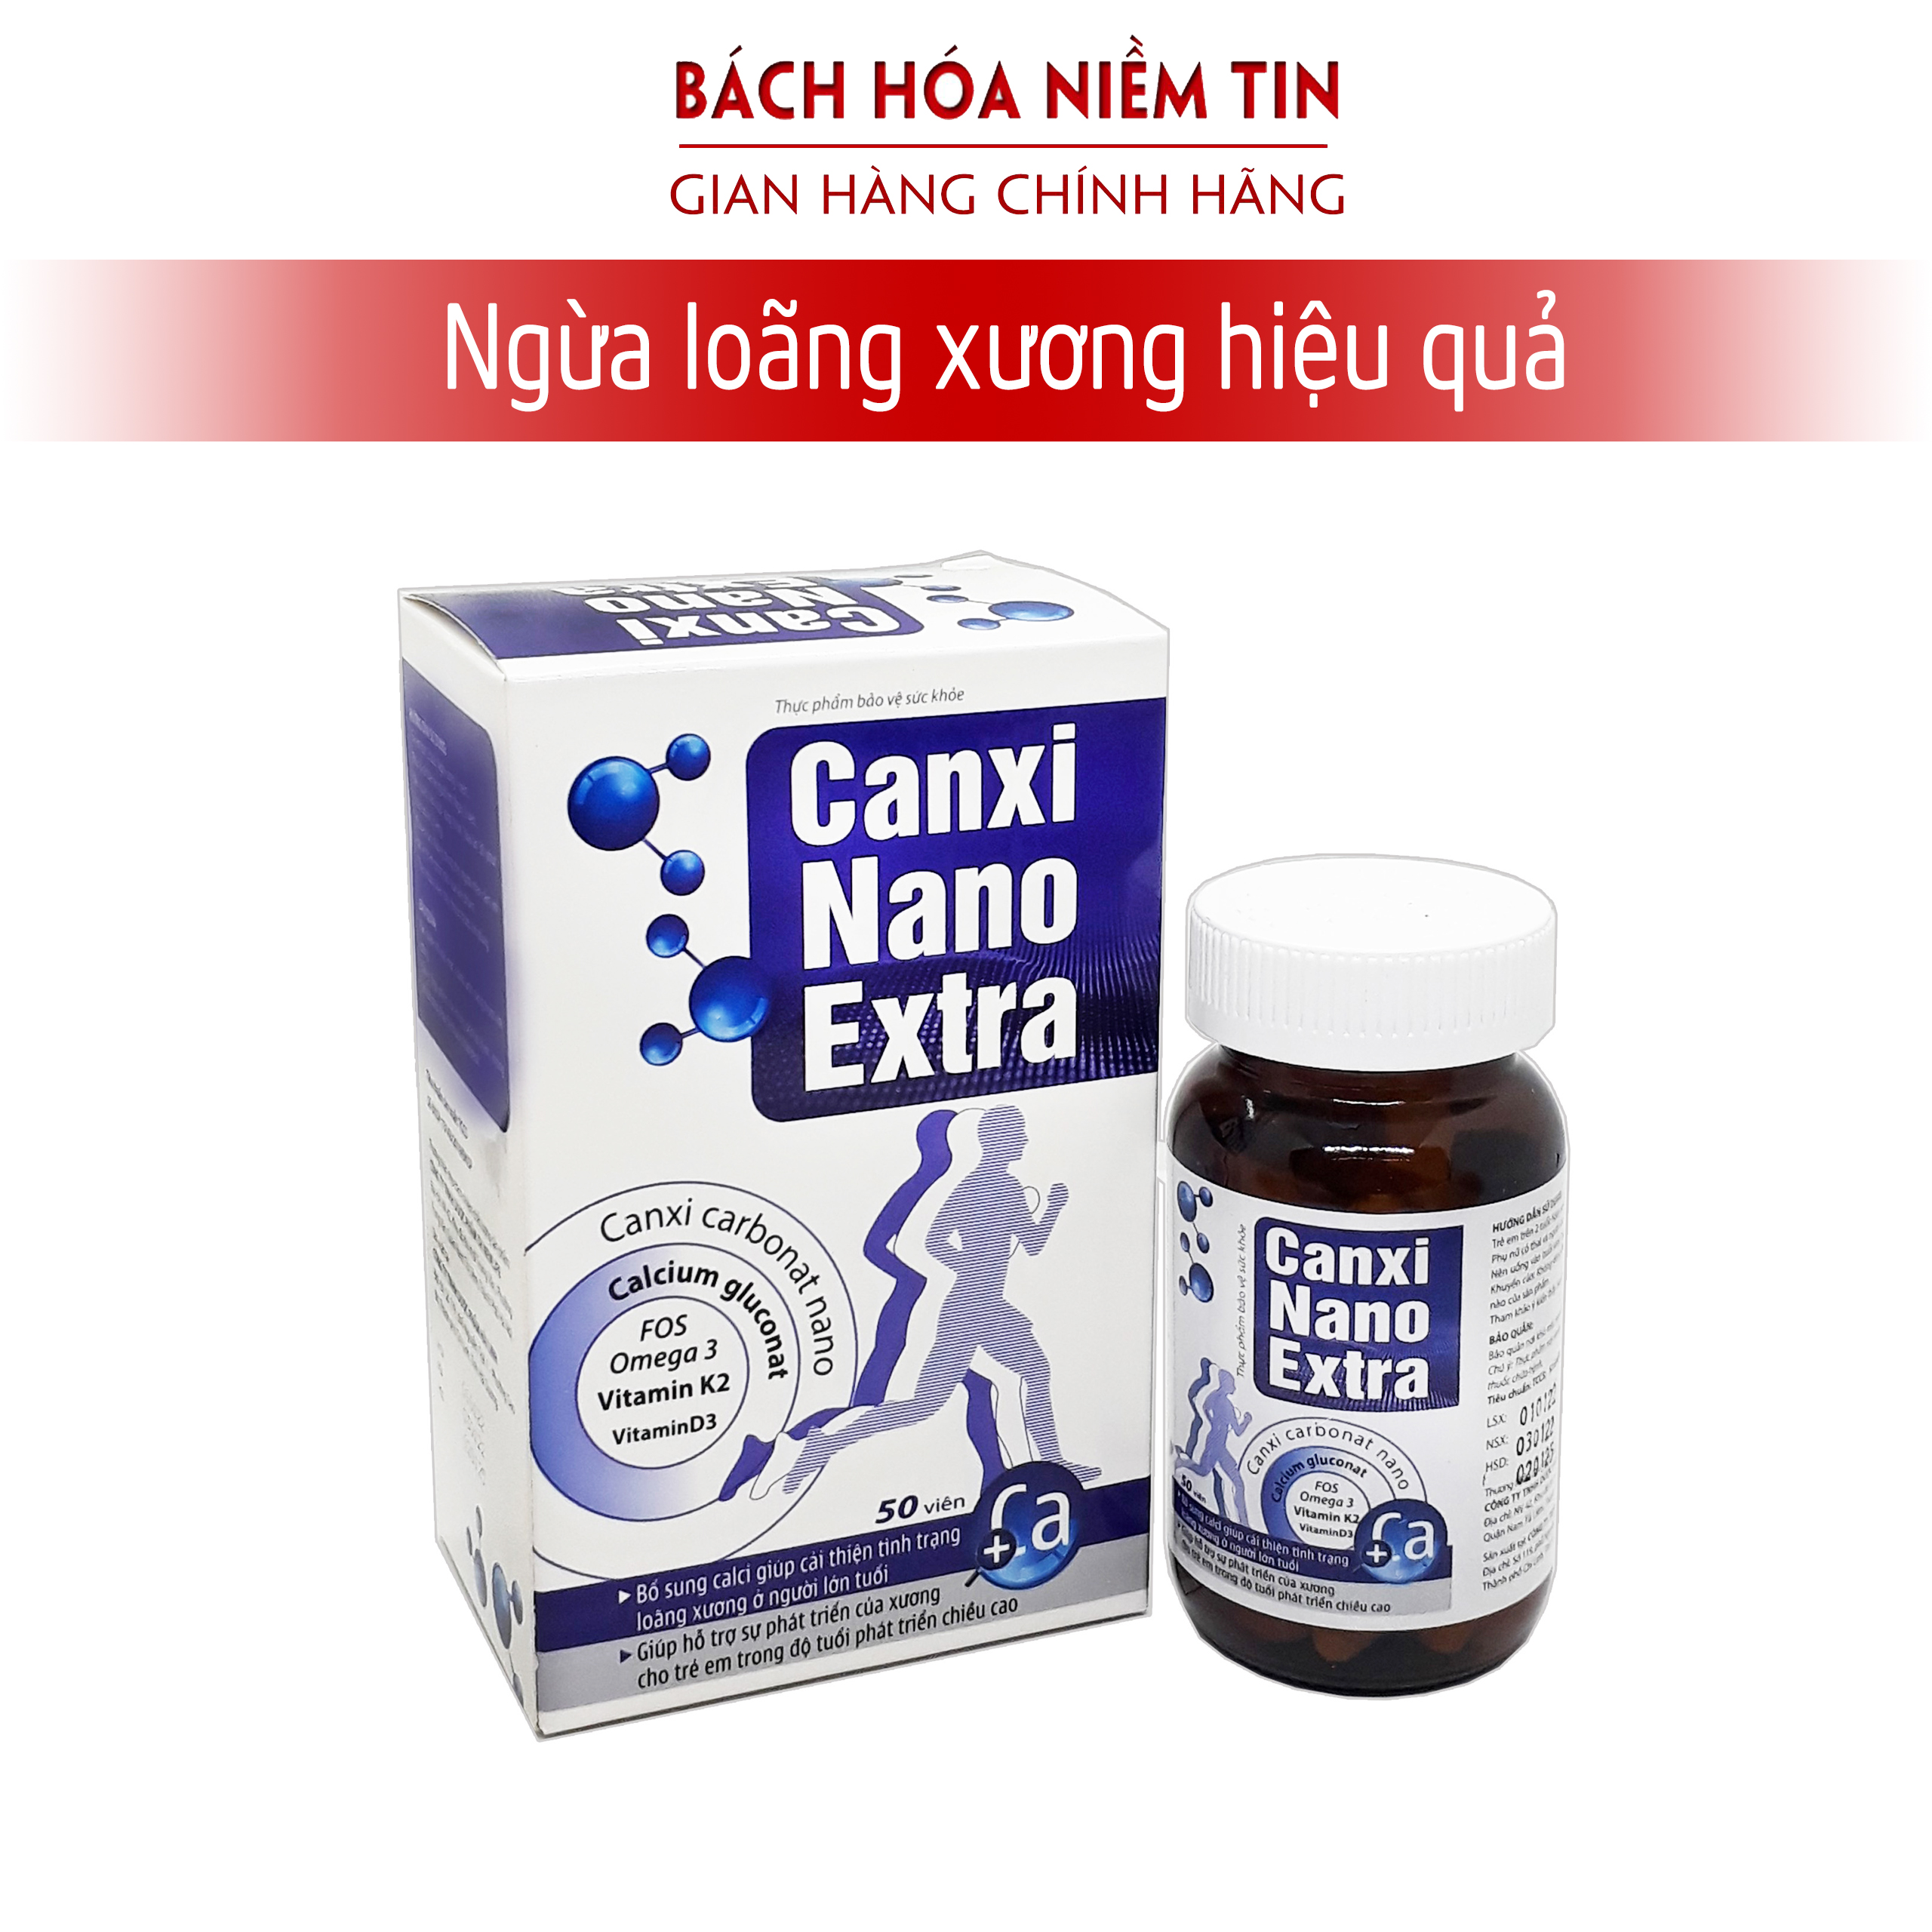 Viên uống phát triển chiều cao CANXI NANO EXTRA - Bổ sung Canxi Vitamin D3. MK2 giúp phát triển chiều cao ngừa loãng xương hiệu quả - Hộp 50 viên chuẩn GMP Bộ Y tế